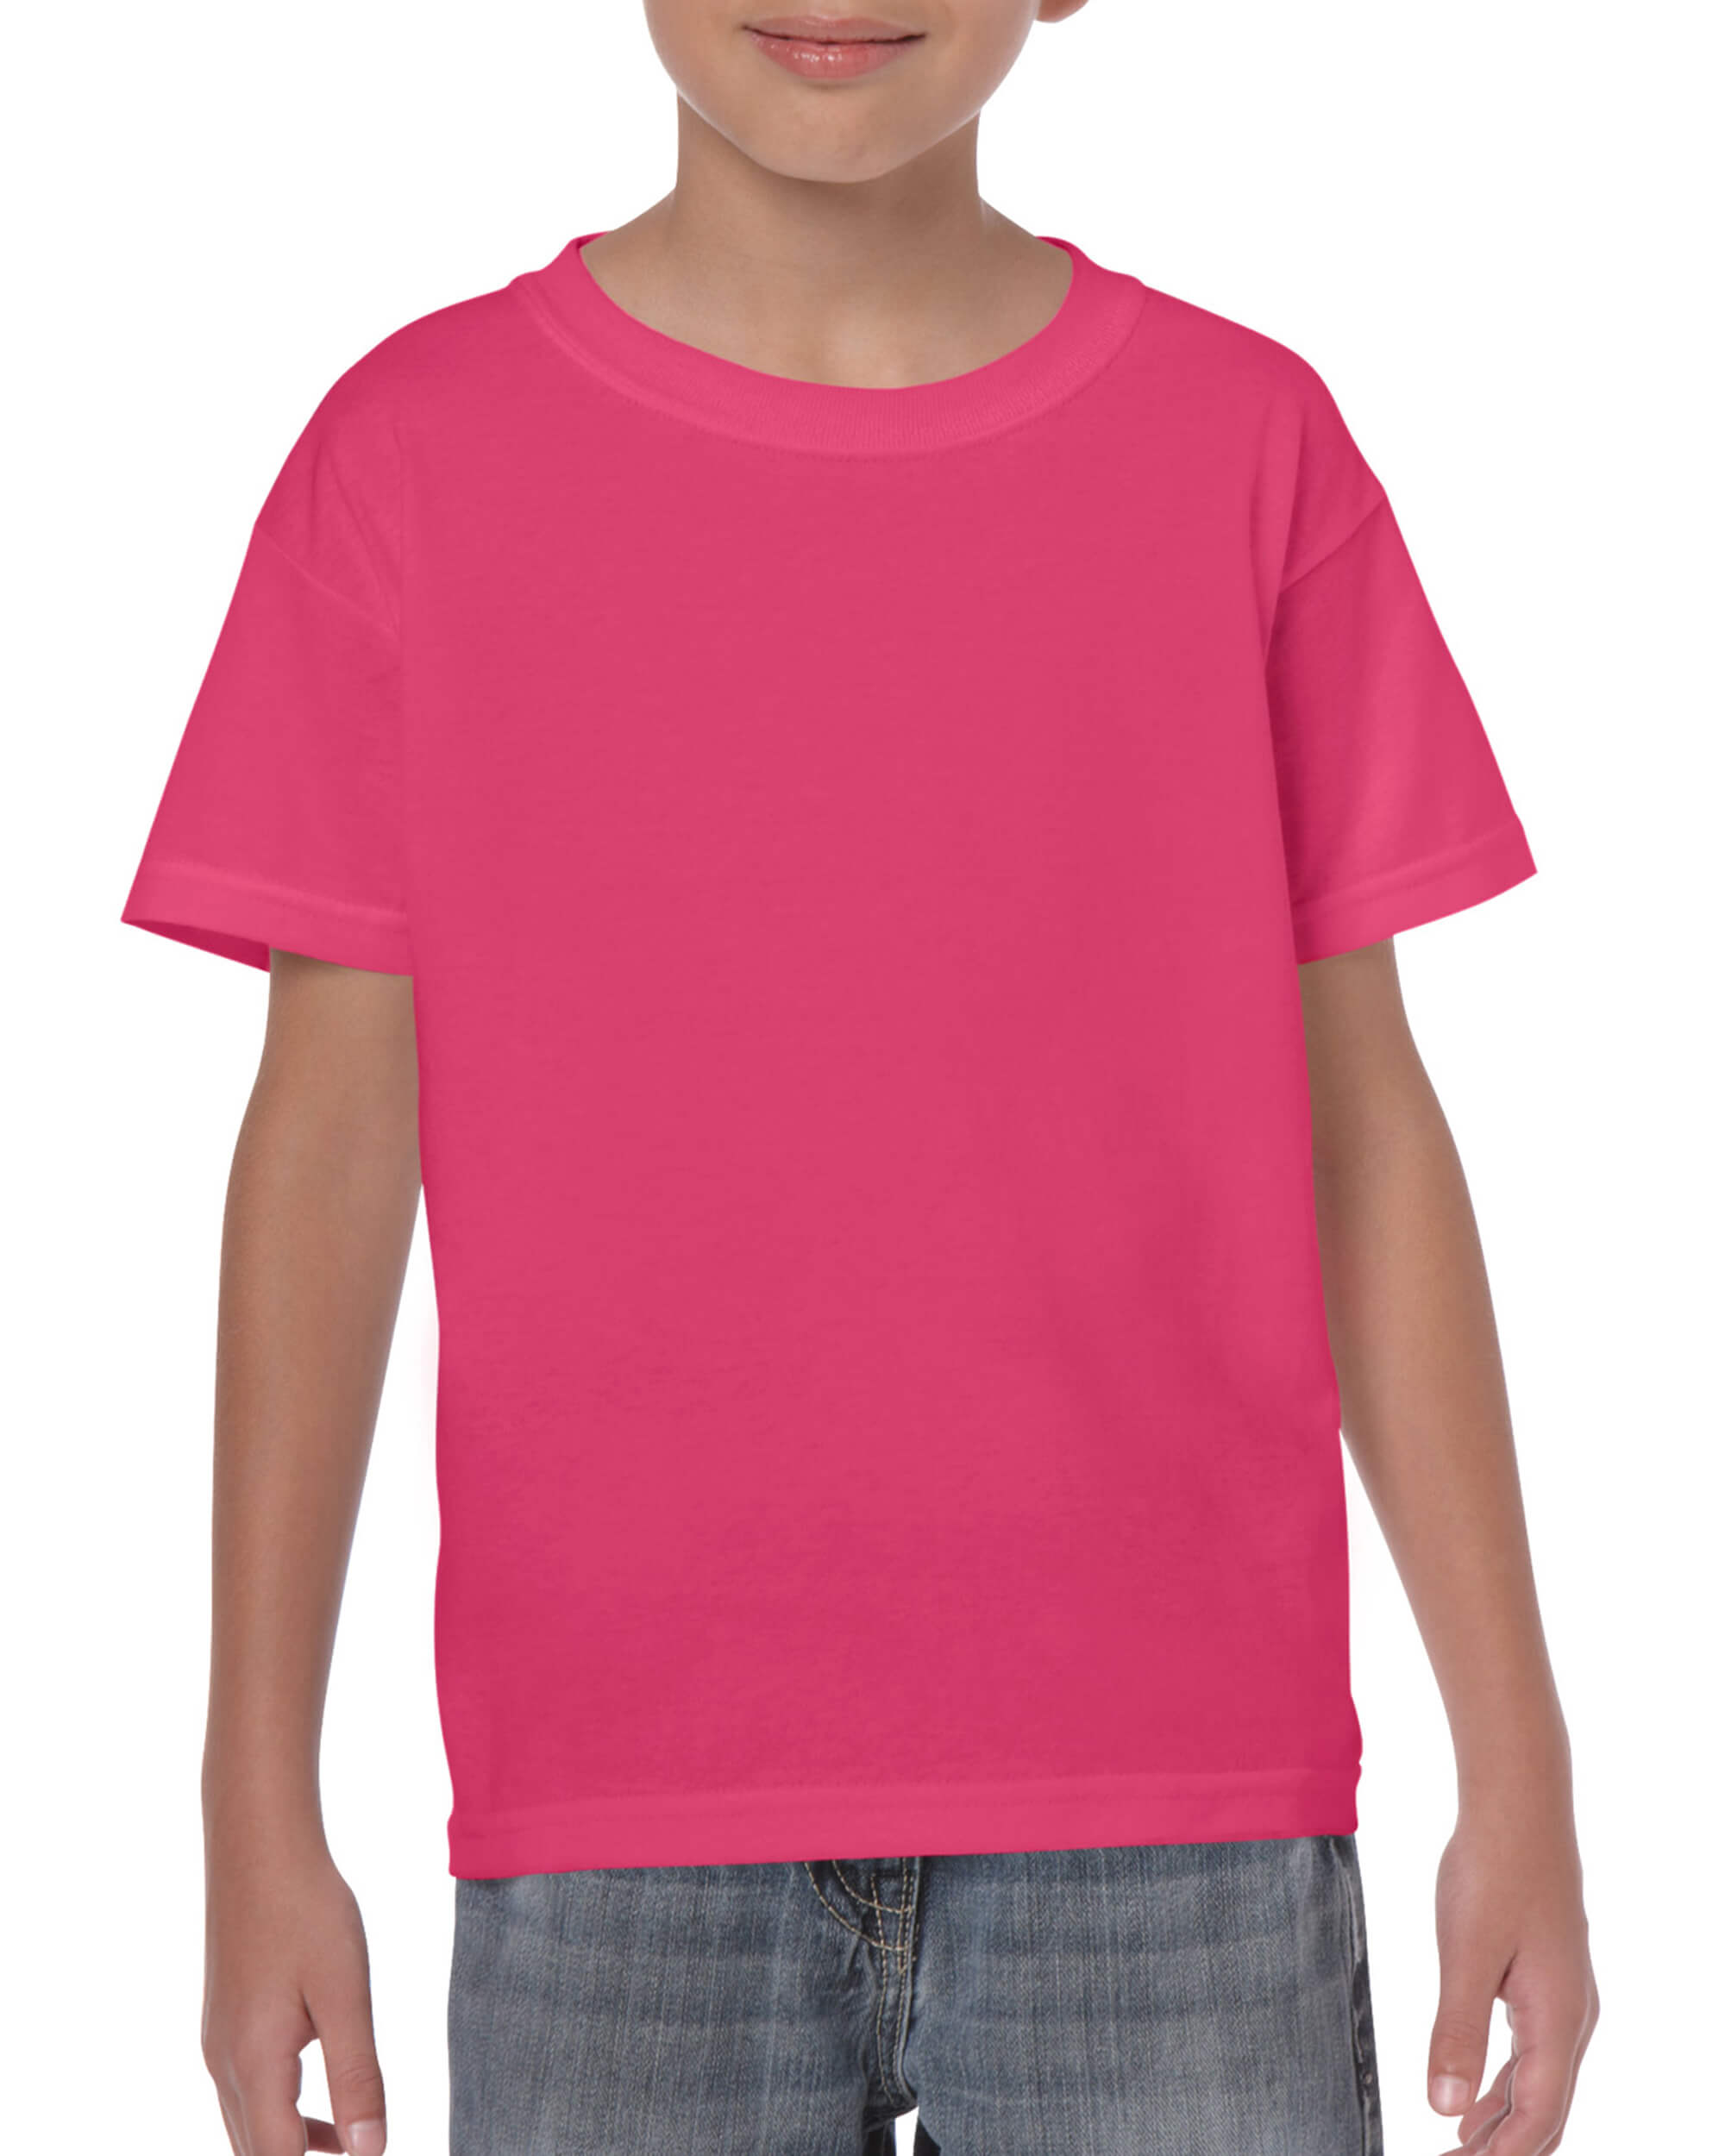 Kids Tshirt - Heliconia